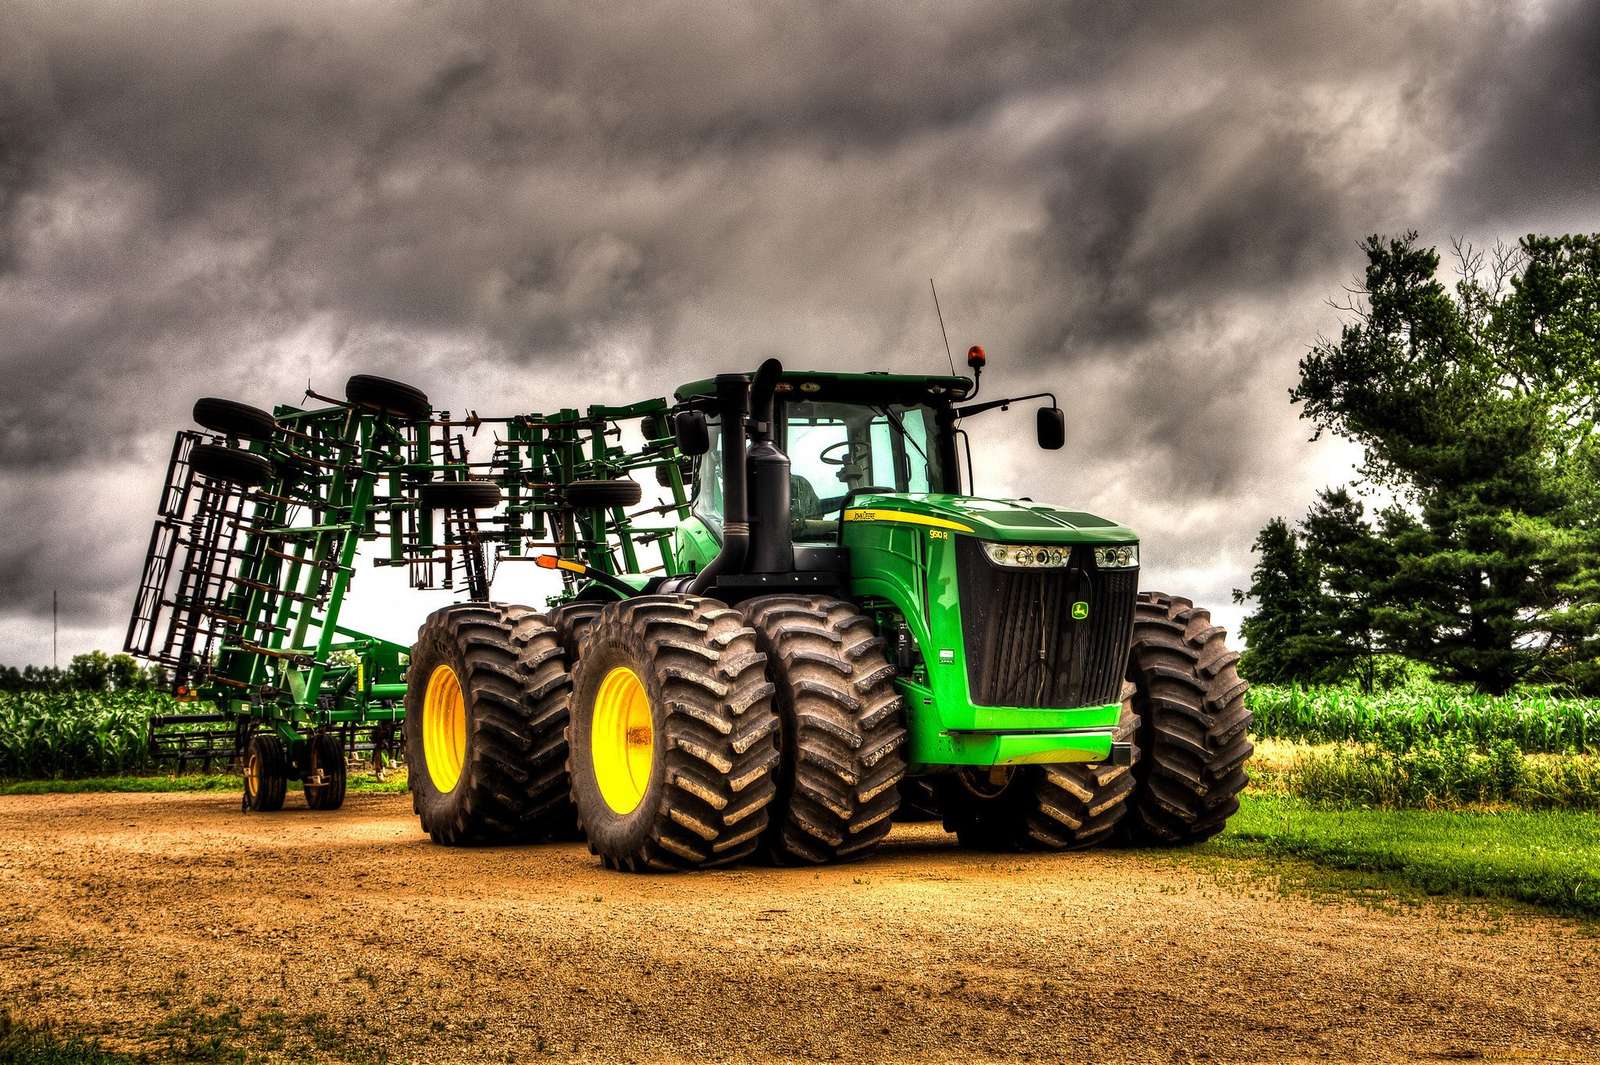 John Deere-tractor puzzel online van foto